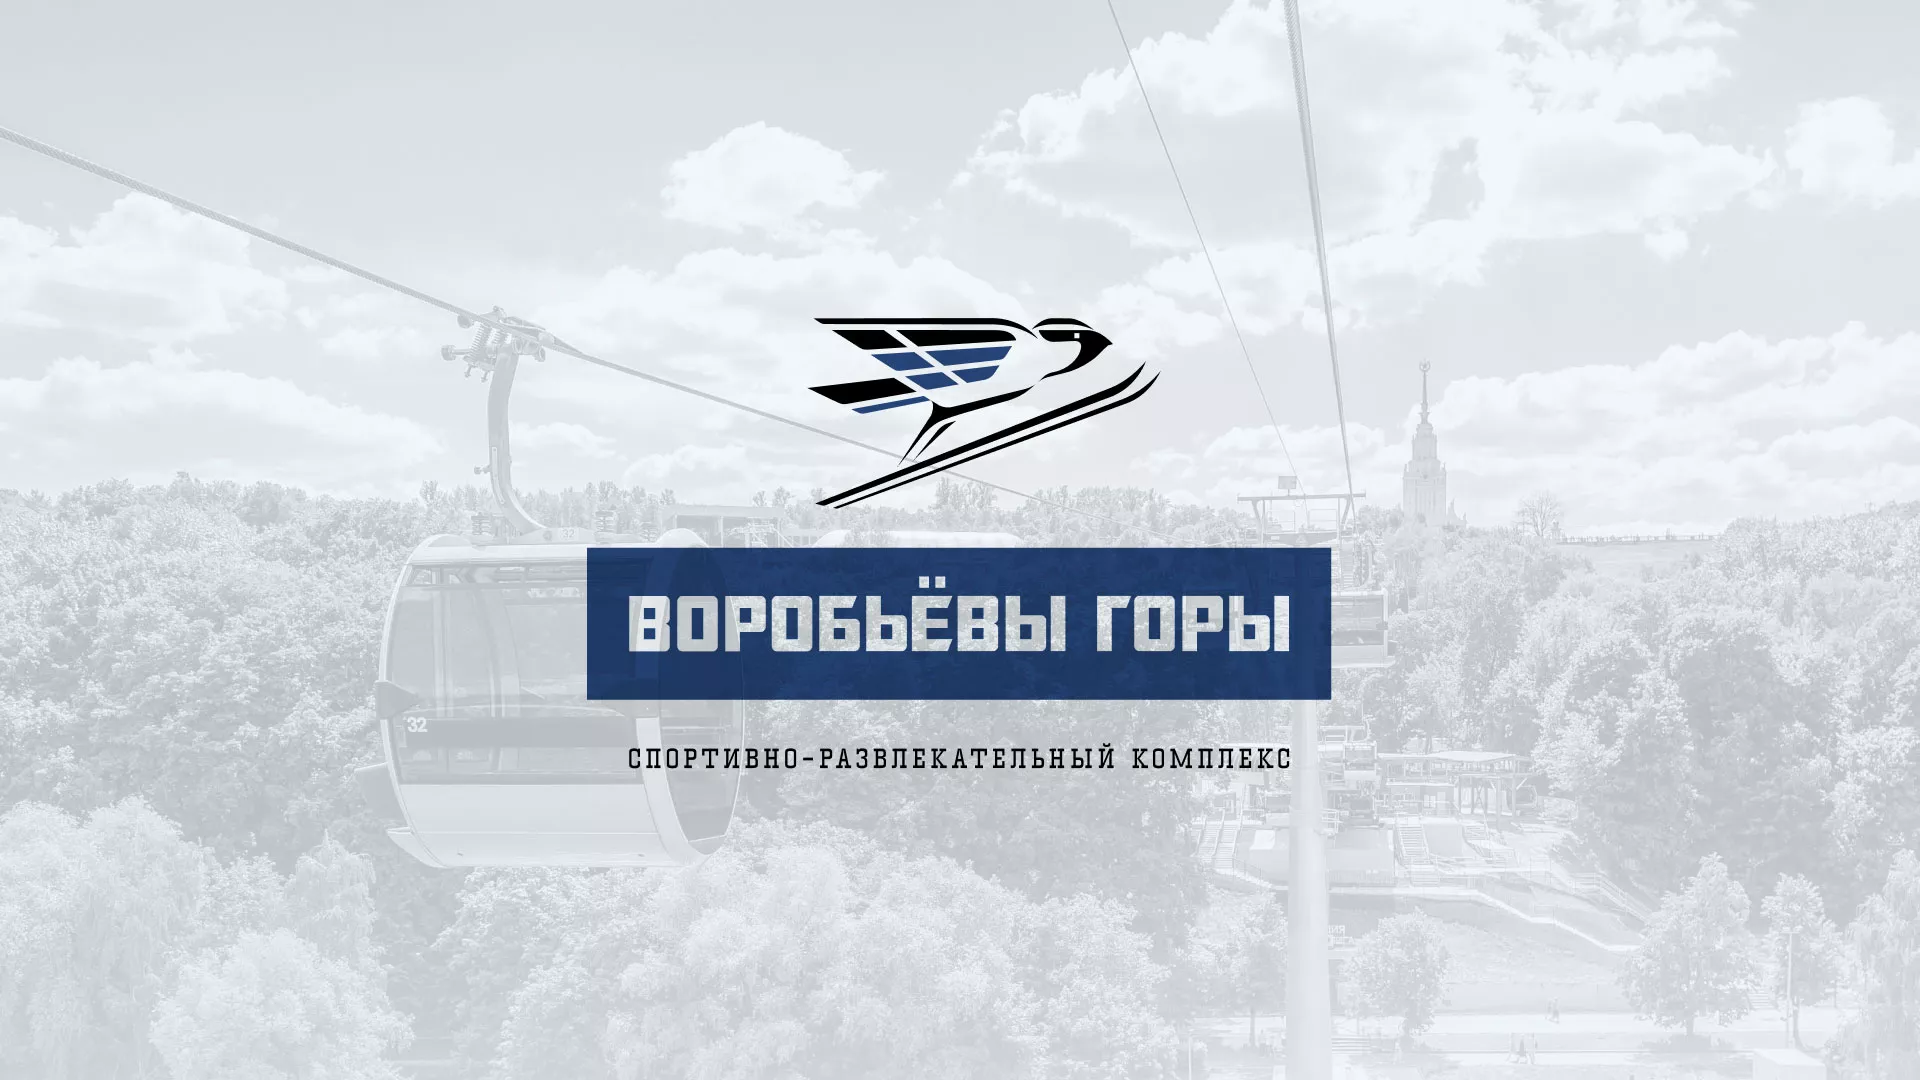 Разработка сайта в Волжском для спортивно-развлекательного комплекса «Воробьёвы горы»